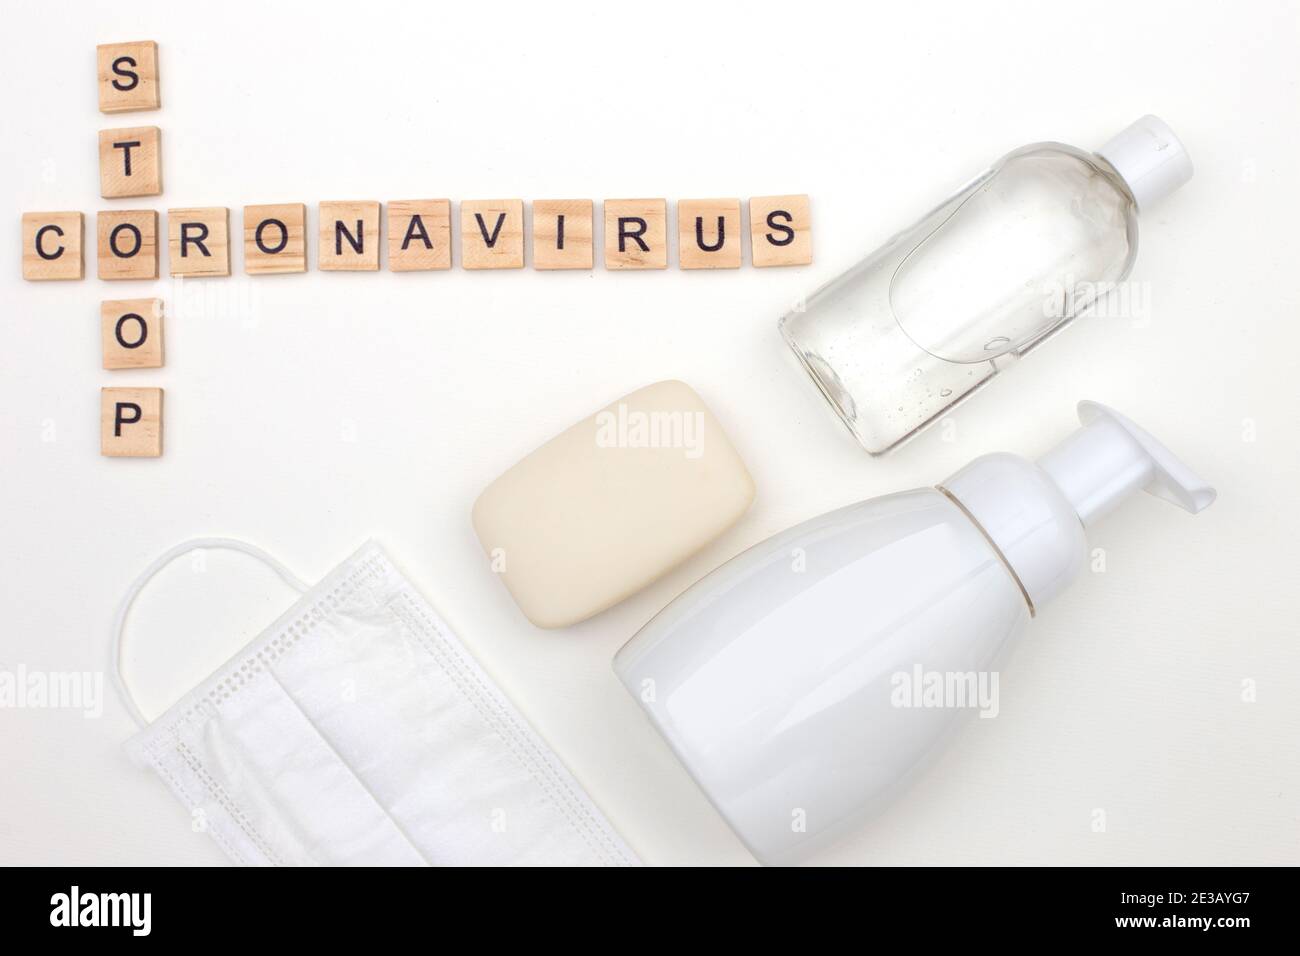 bouteille de savon antibactérien et bouteille de gel antibactérien pour les mains, une barre de savon, un masque médical Banque D'Images